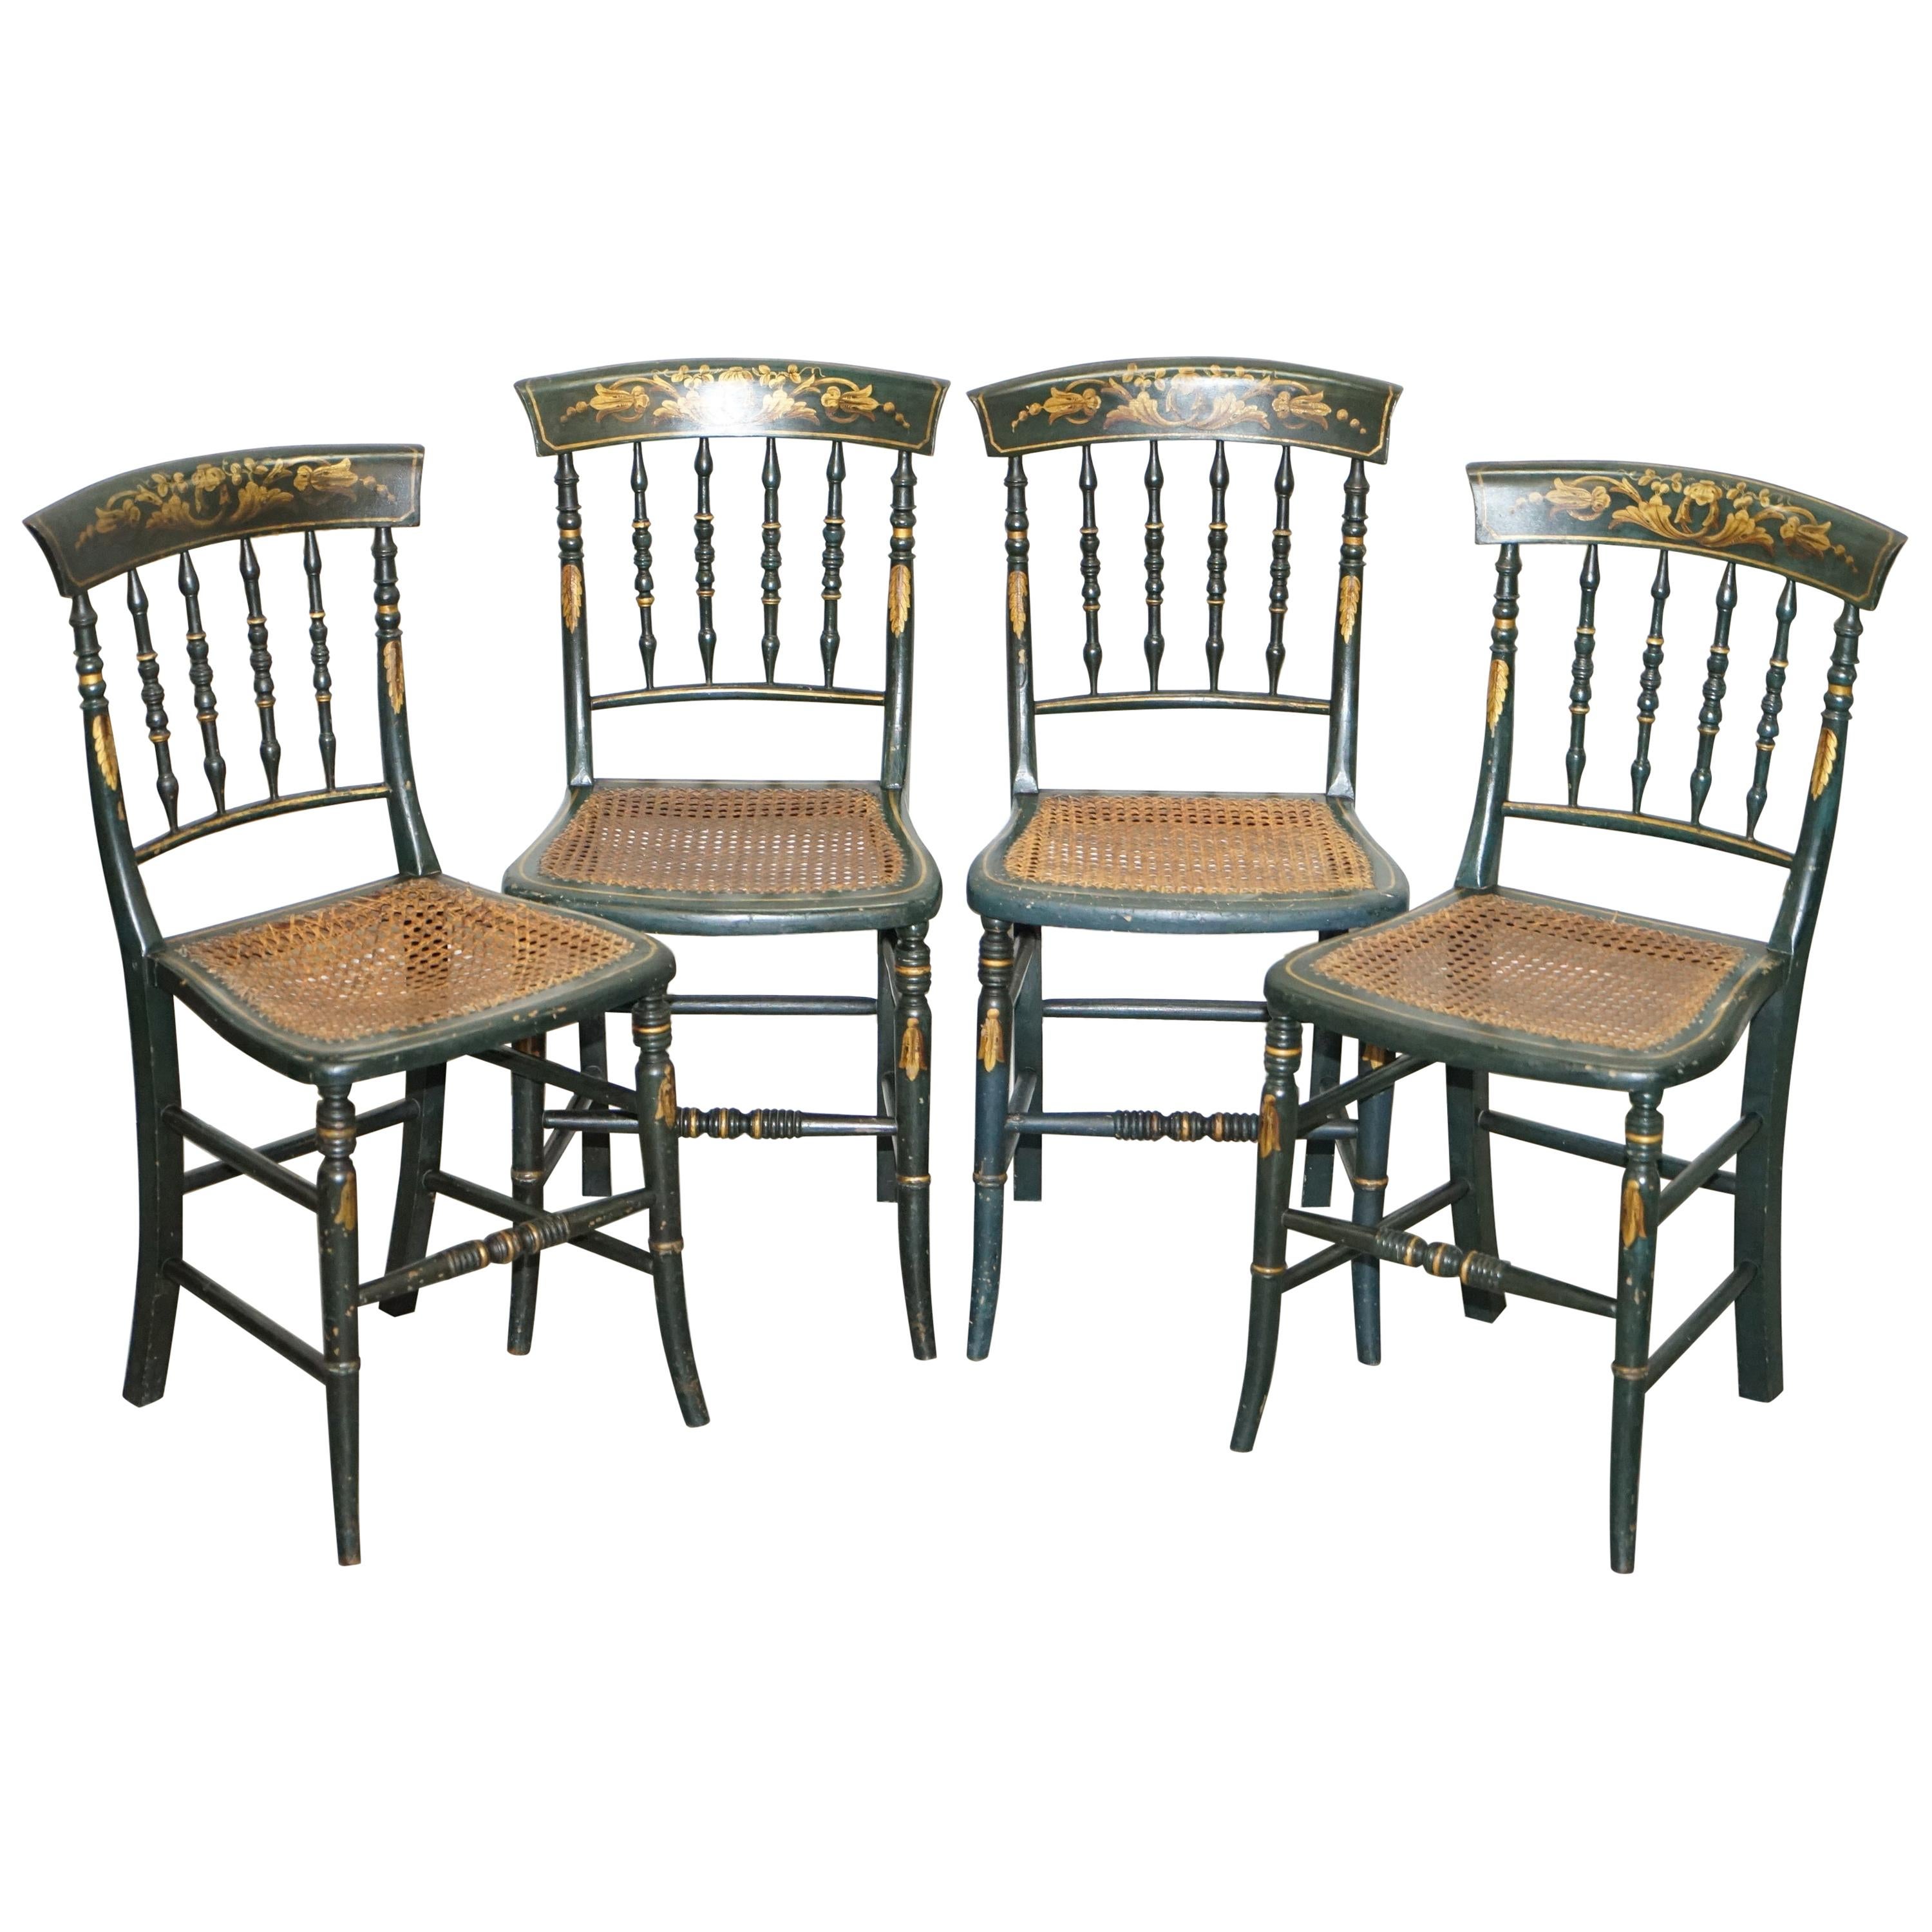 Ensemble très rare de quatre chaises bergères en rotin de style Régence peintes à la main, datant d'environ 1815, 4 pièces